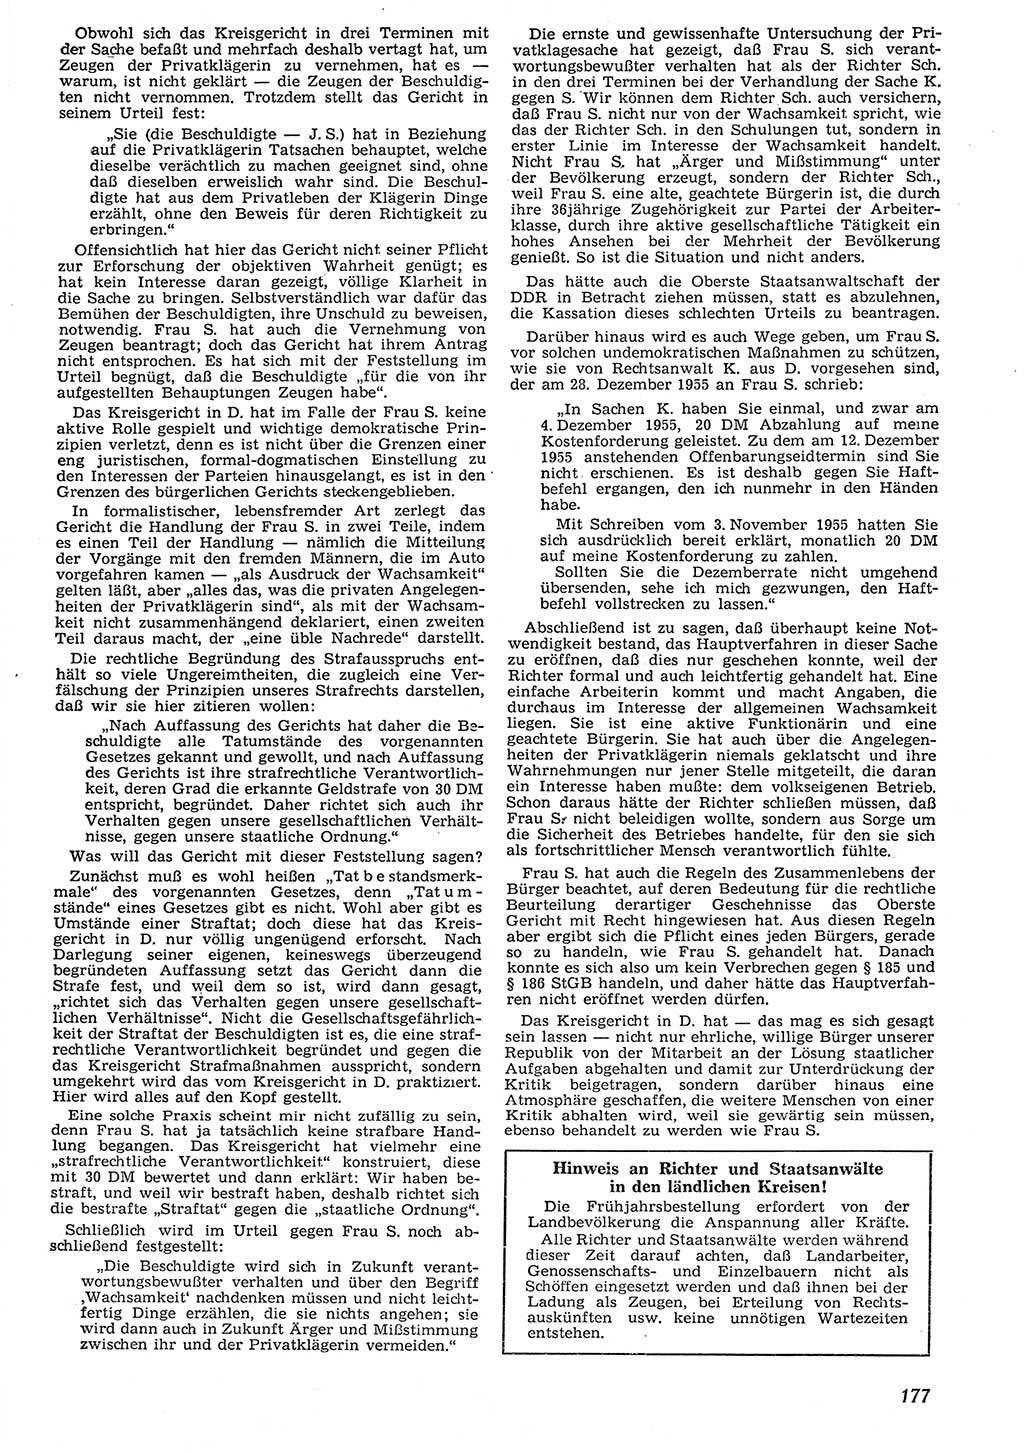 Neue Justiz (NJ), Zeitschrift für Recht und Rechtswissenschaft [Deutsche Demokratische Republik (DDR)], 10. Jahrgang 1956, Seite 177 (NJ DDR 1956, S. 177)